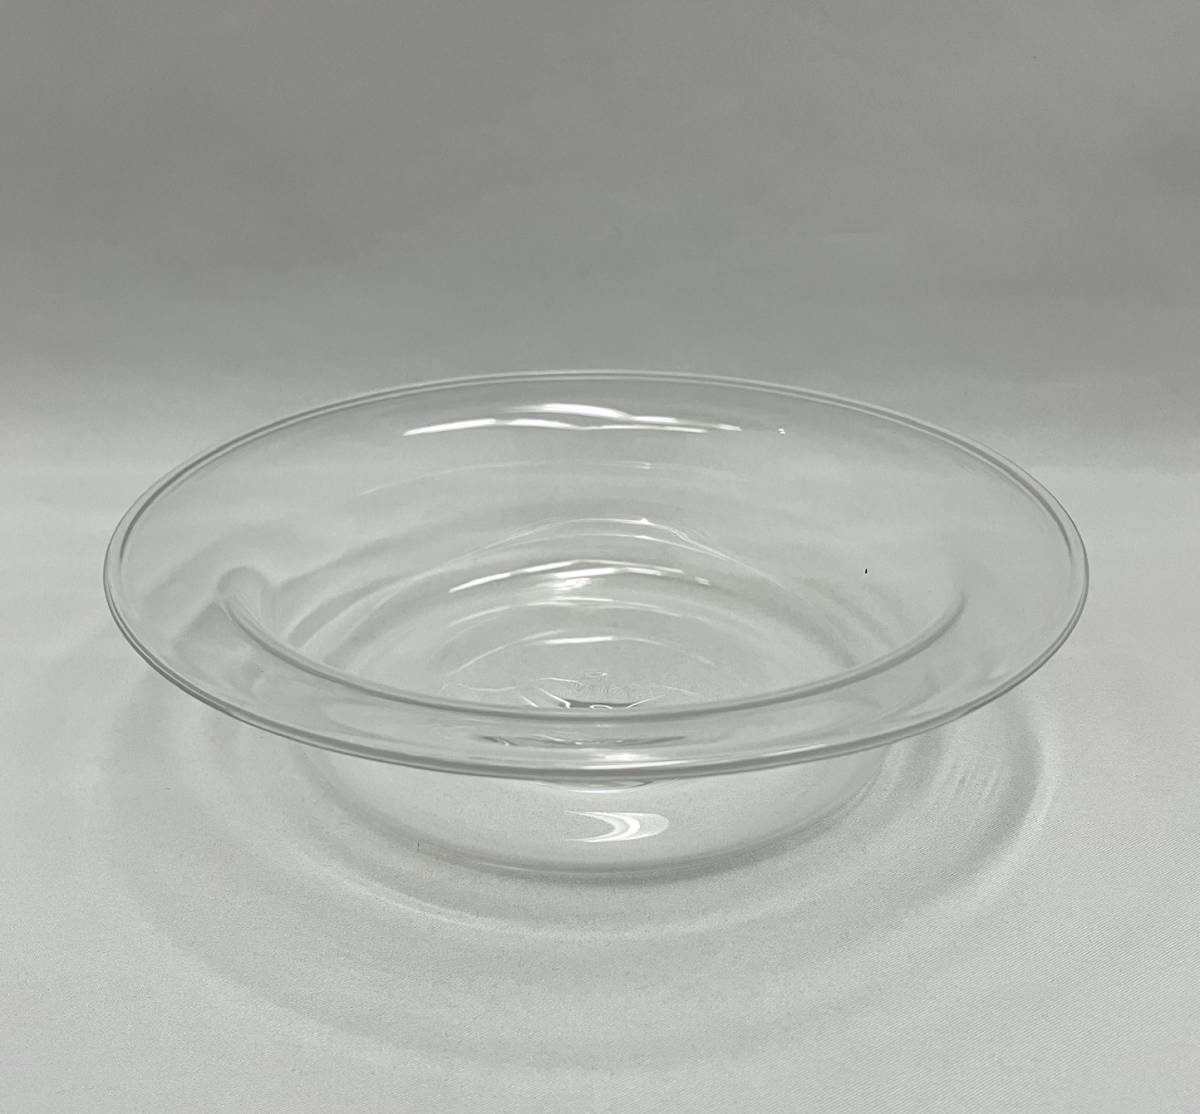 俵屋■真作保証 山野アンダーソン陽子『スープ皿』個展にて購入 ガラス作家